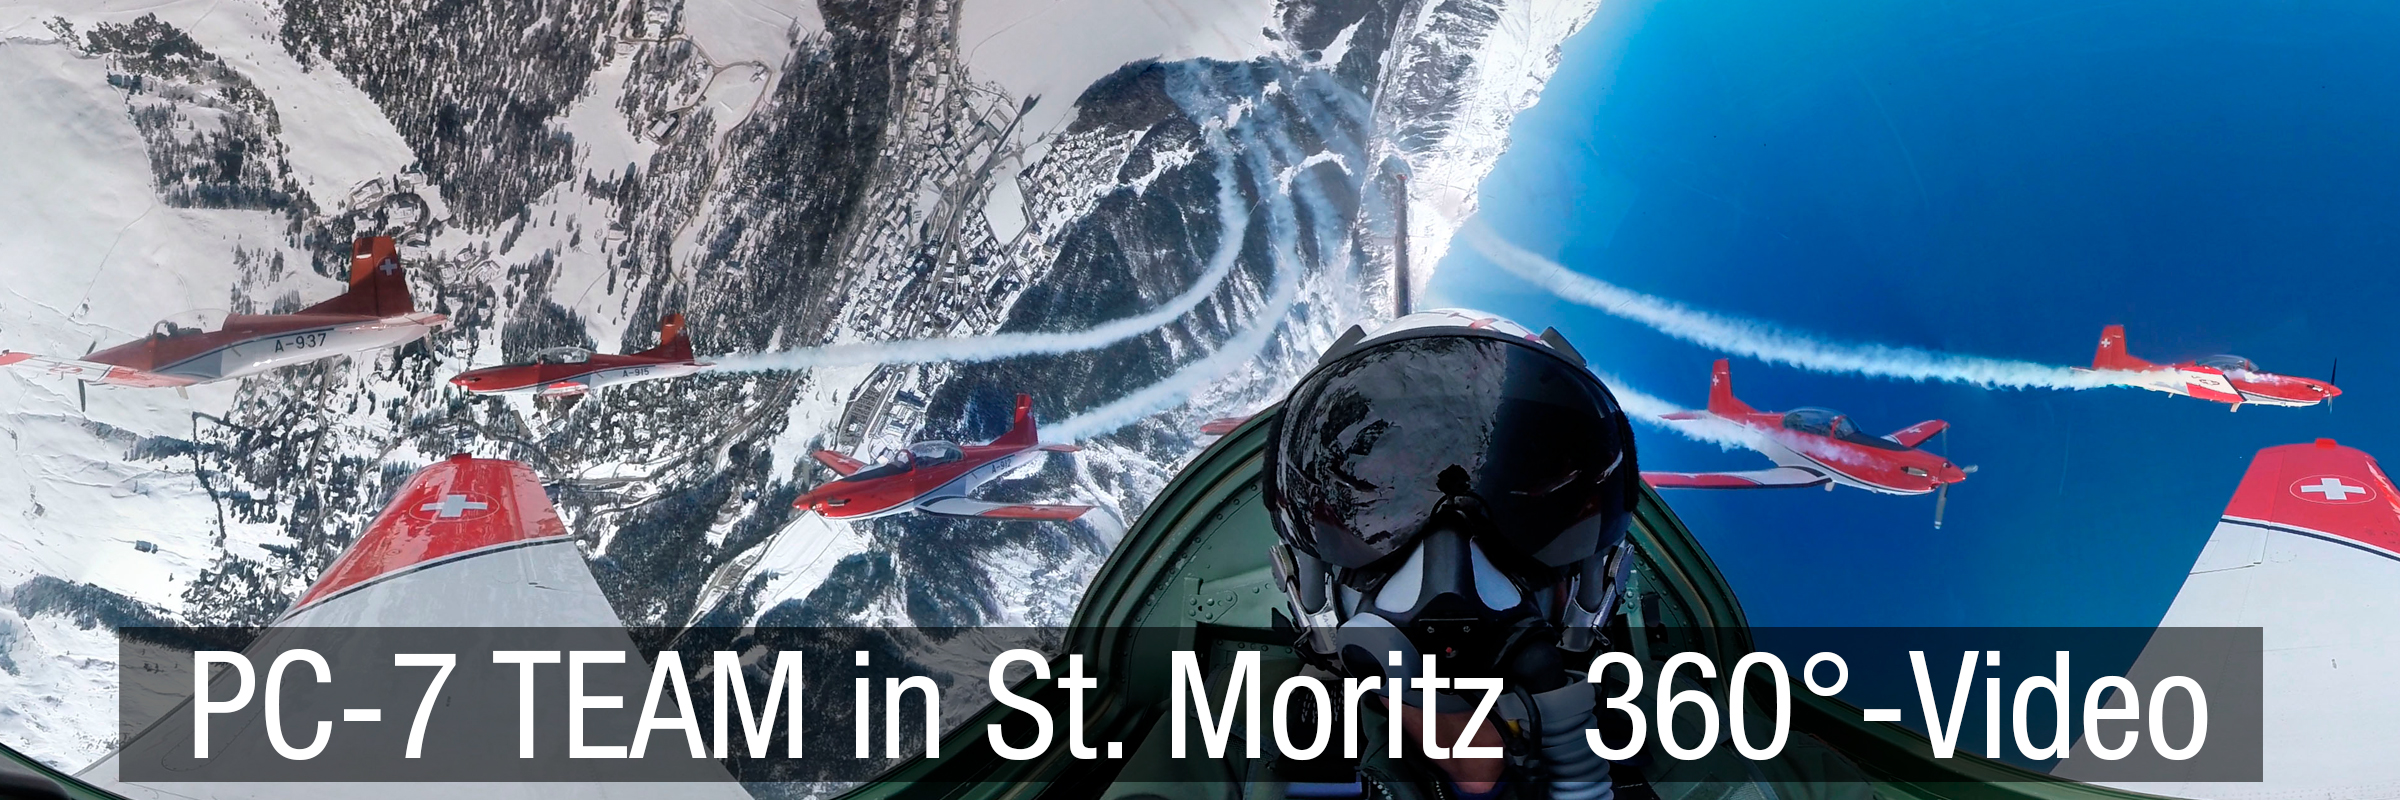 PC-7 TEAM over St. Moritz